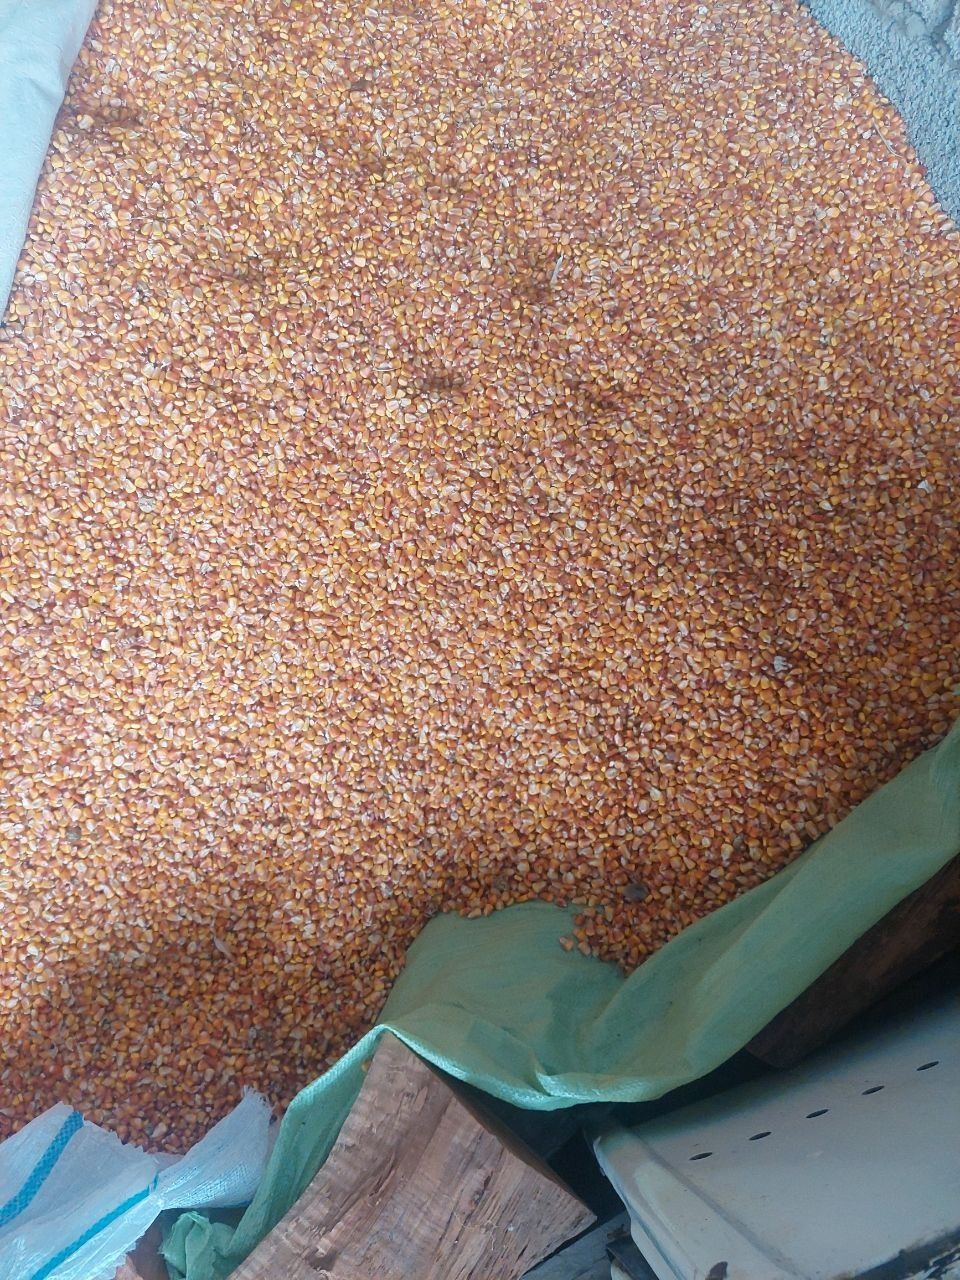 Макка жухори сотилади, продаётся кукуруза высший сорт